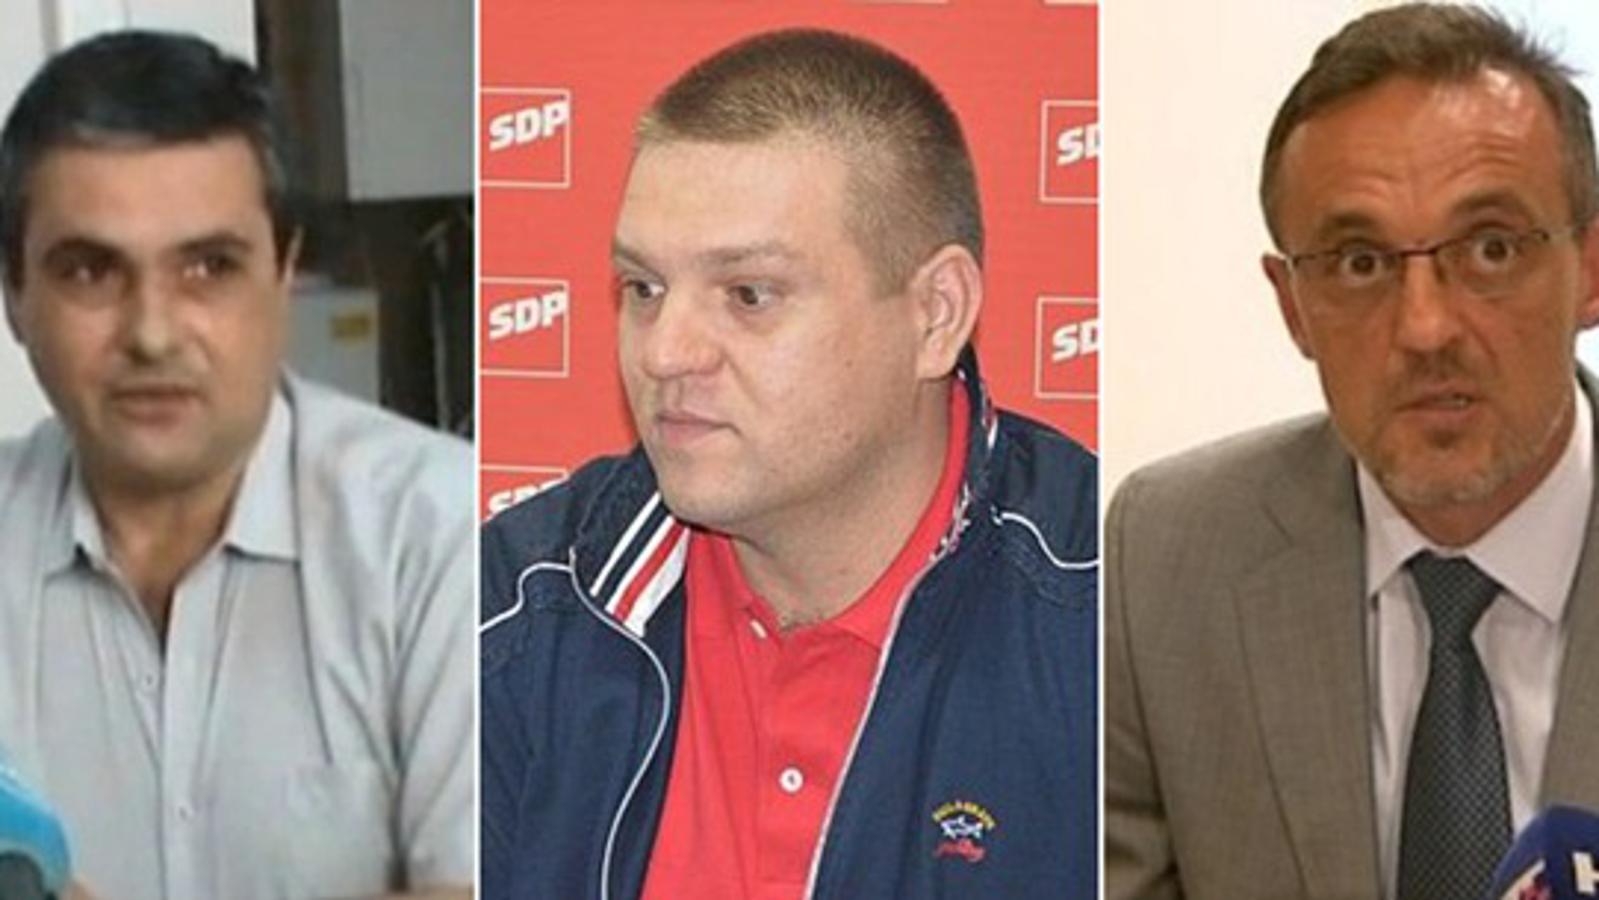 Tihomir Biščević, Tomislav Opačak, Tihomir Jakovina